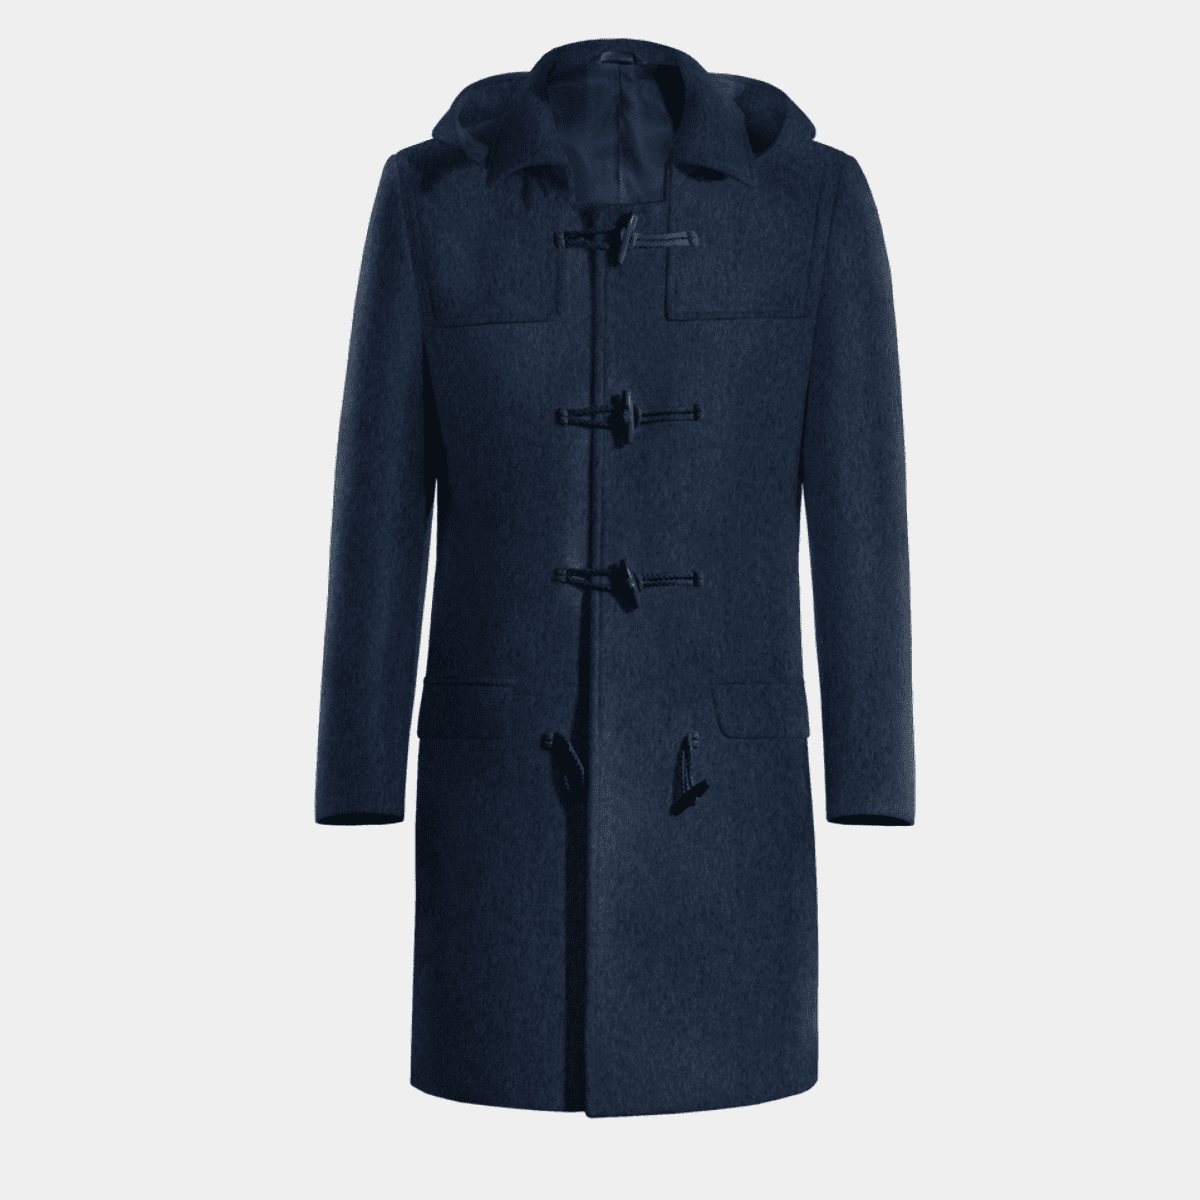 Blue Long Duffle coat 284€ | Hockerty